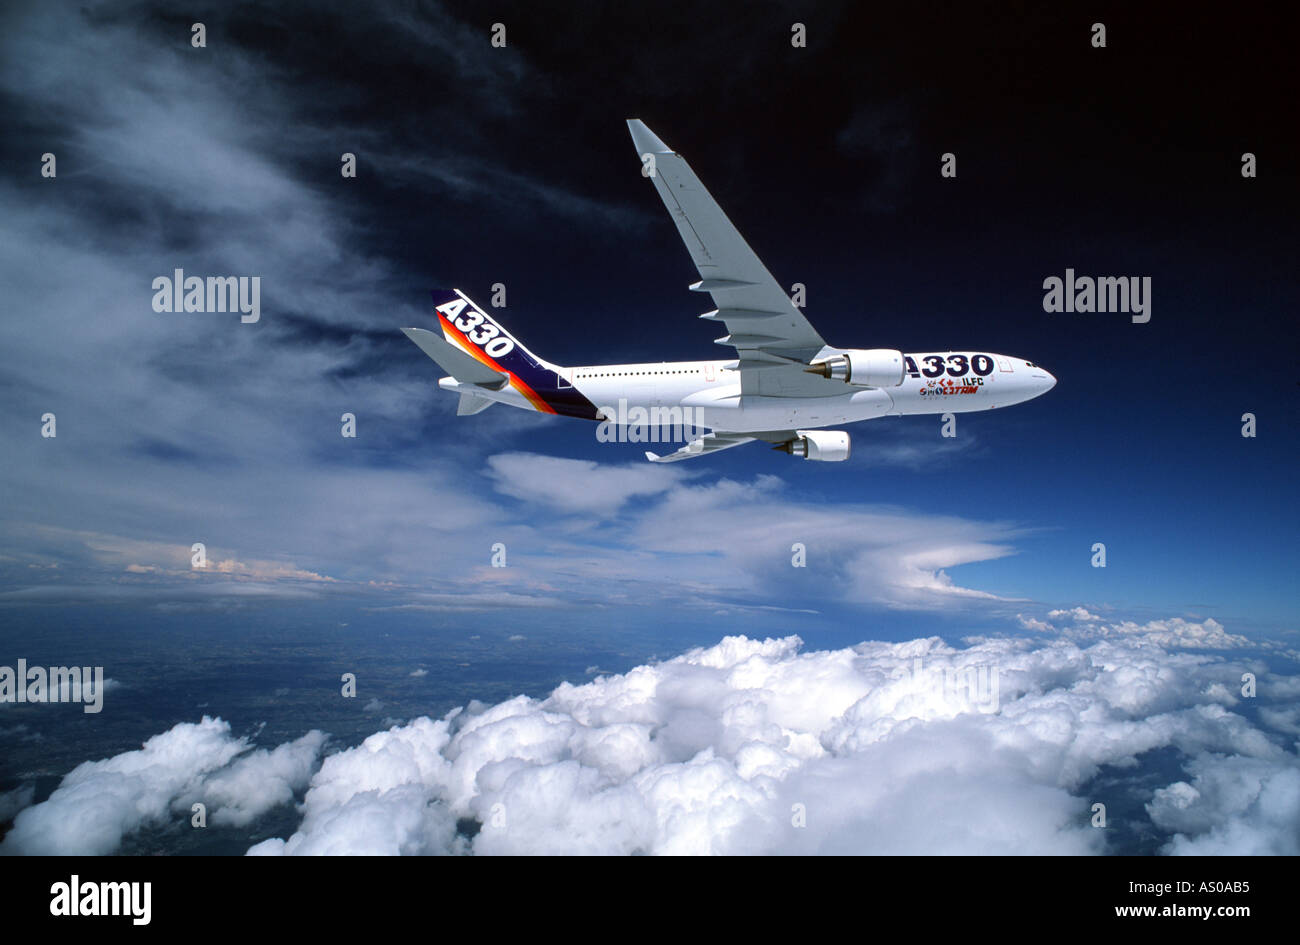 En el vuelo de aviones de pasajeros Airbus A330 volando sobre la nube Foto de stock